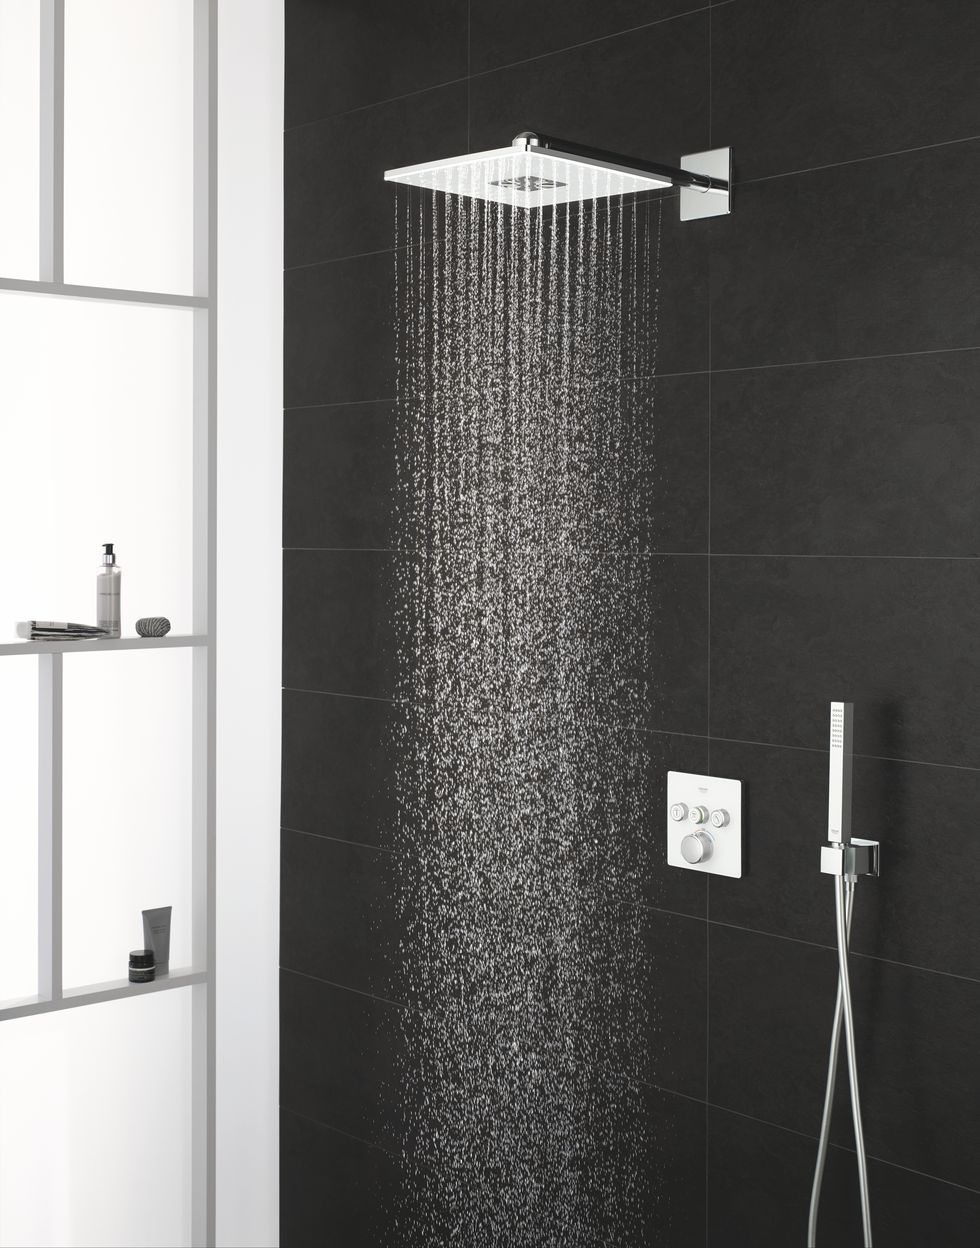 Shower, Shower panel, Plumbing fixture, Shower curtain, Shower head, Plumbing, Room, Bathroom, Tap, Interior design, 